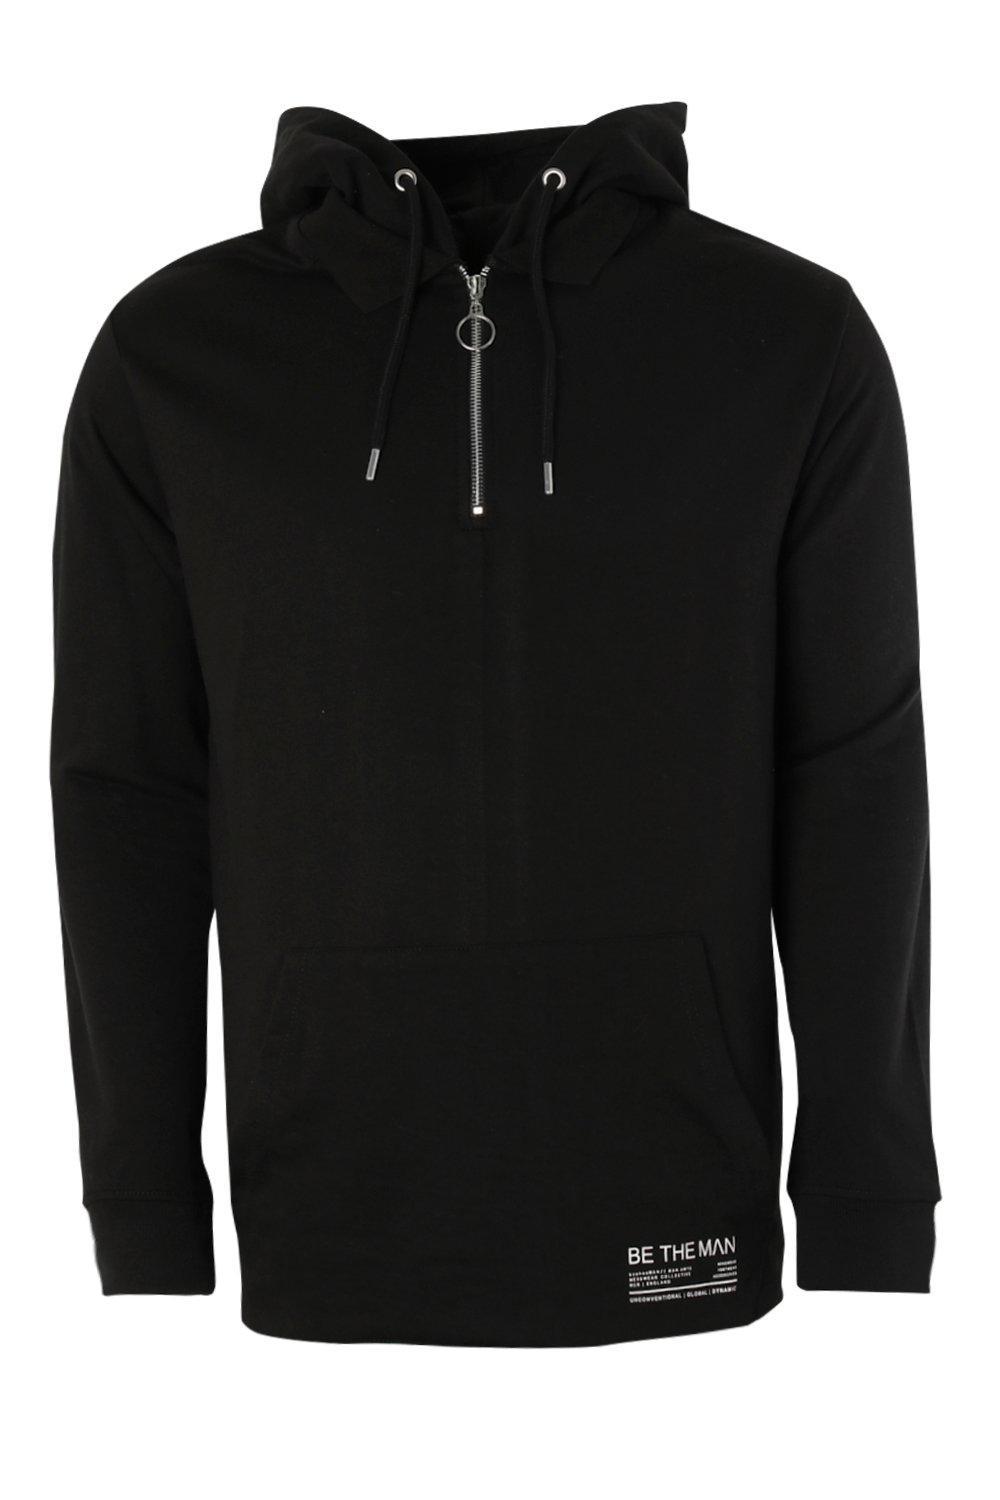 Lyst - Boohoo Back Print Rugby Hooded Sweatshirt in Black for Men